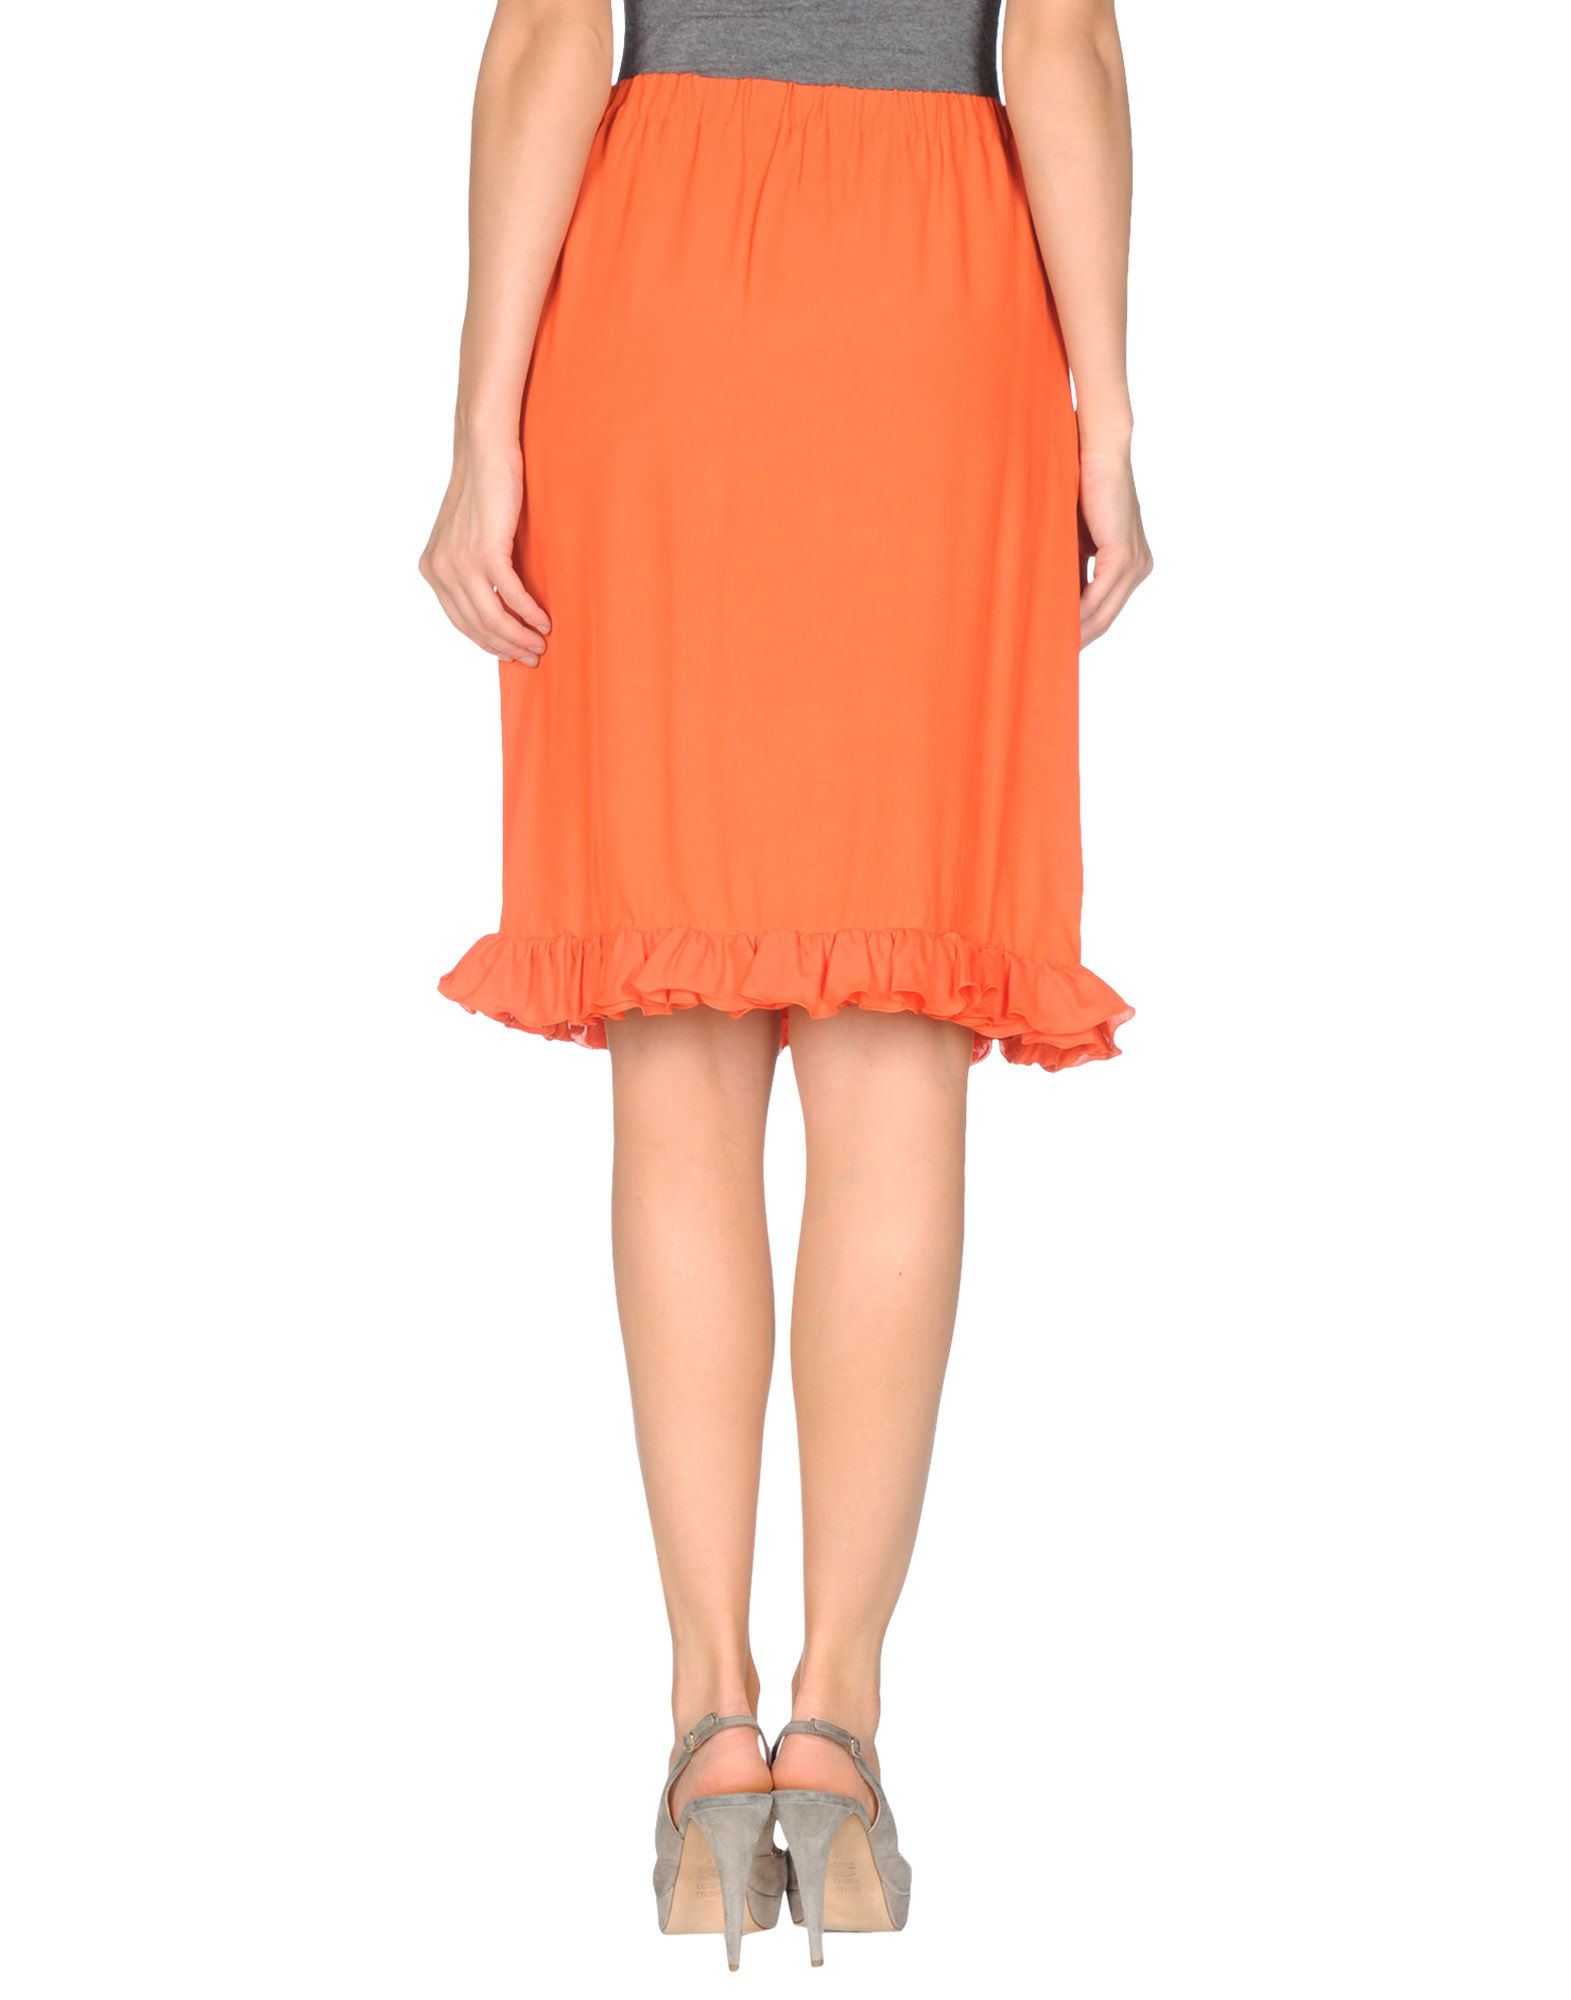 Marni Knee Length Skirt in Orange - Lyst